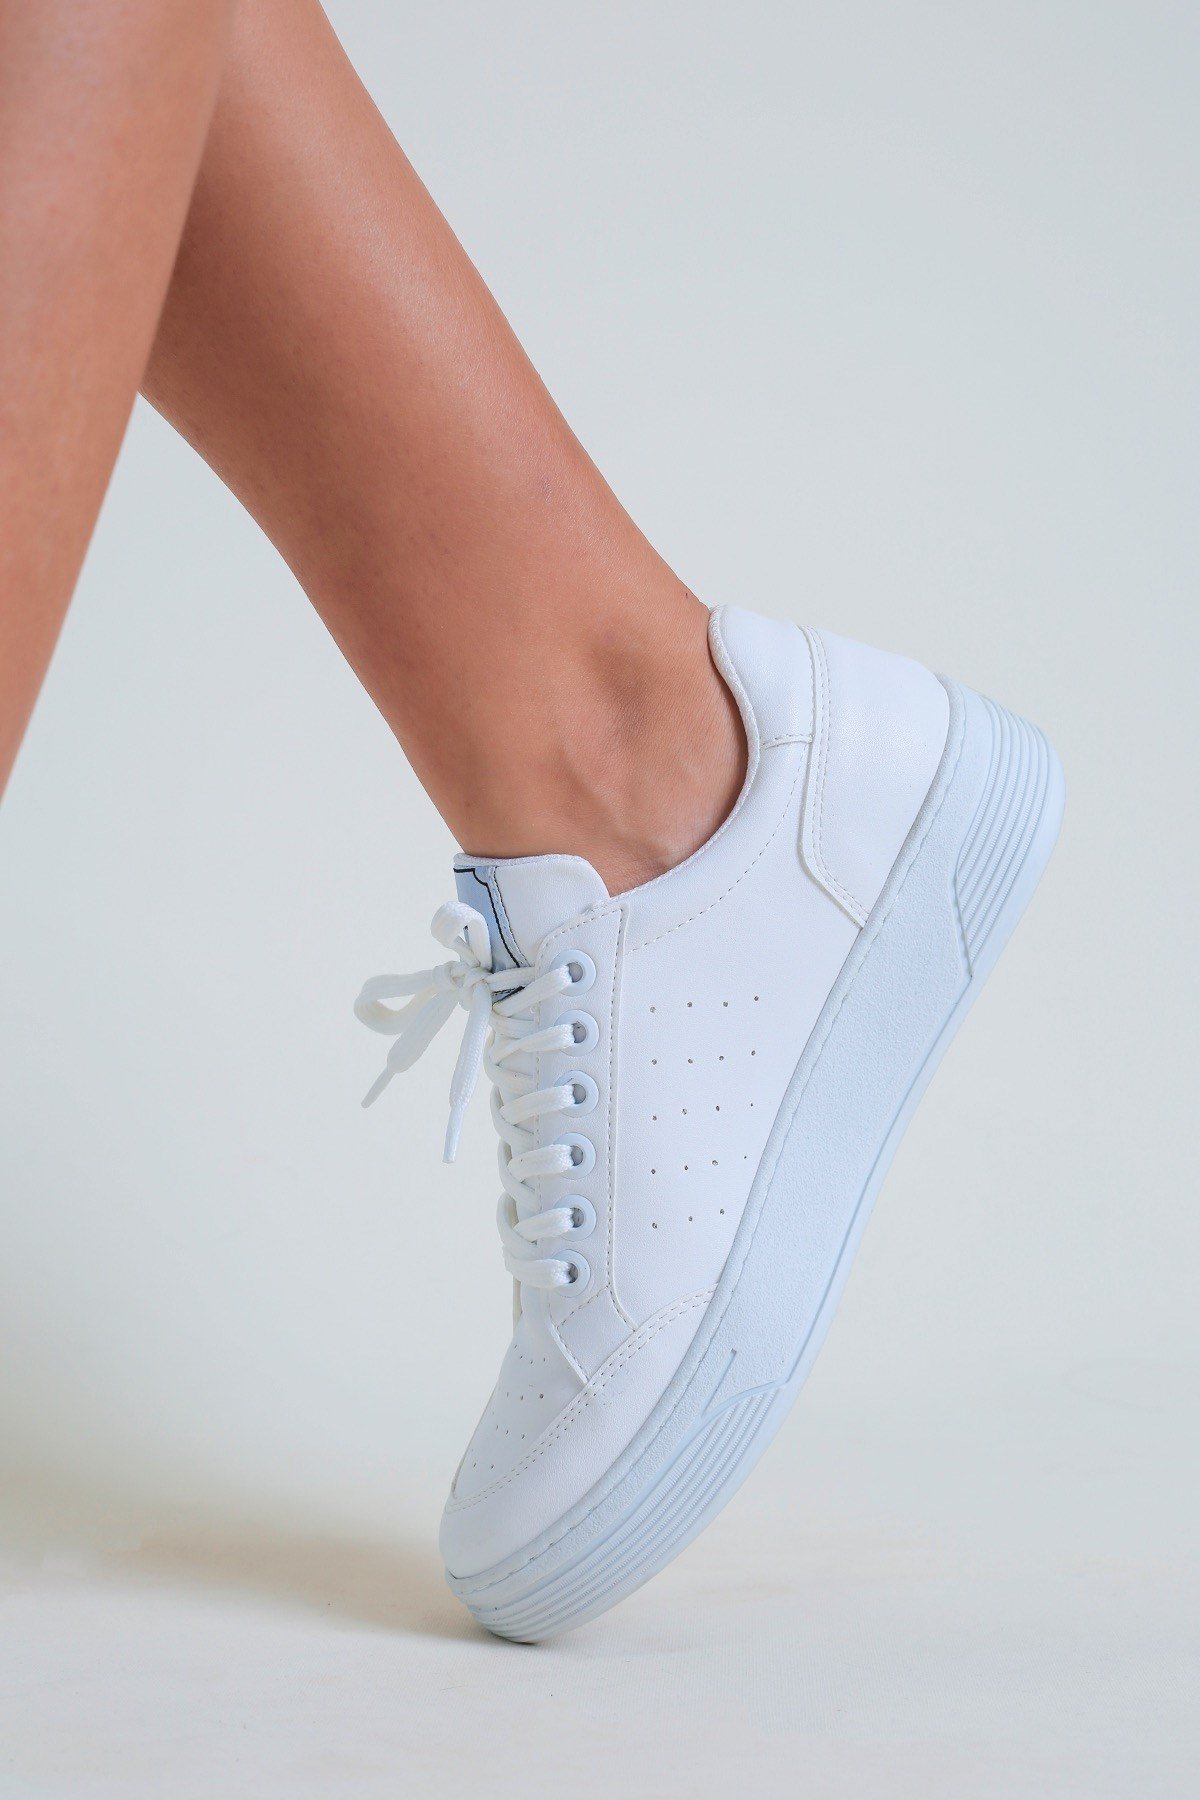 Celine Model Yeni Sezon Sneakers Spor Ayakkabi Beyaz - Still Durağı